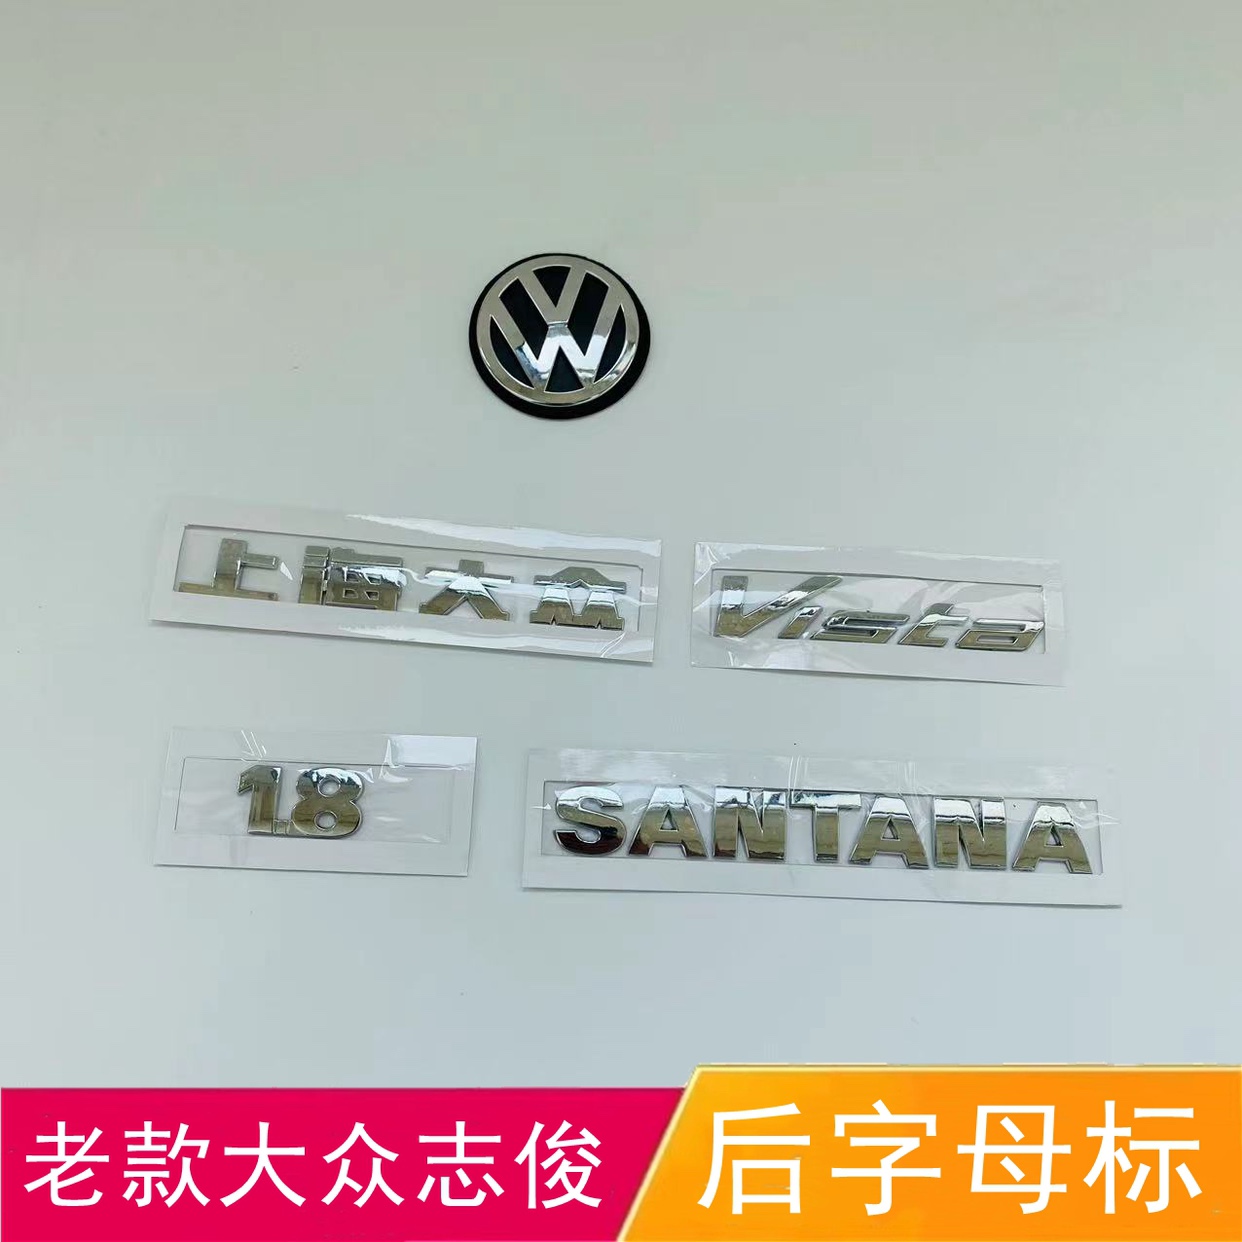 适配老款志俊后车标志俊车尾SANTANA字母标志1.8排量上海大众字贴